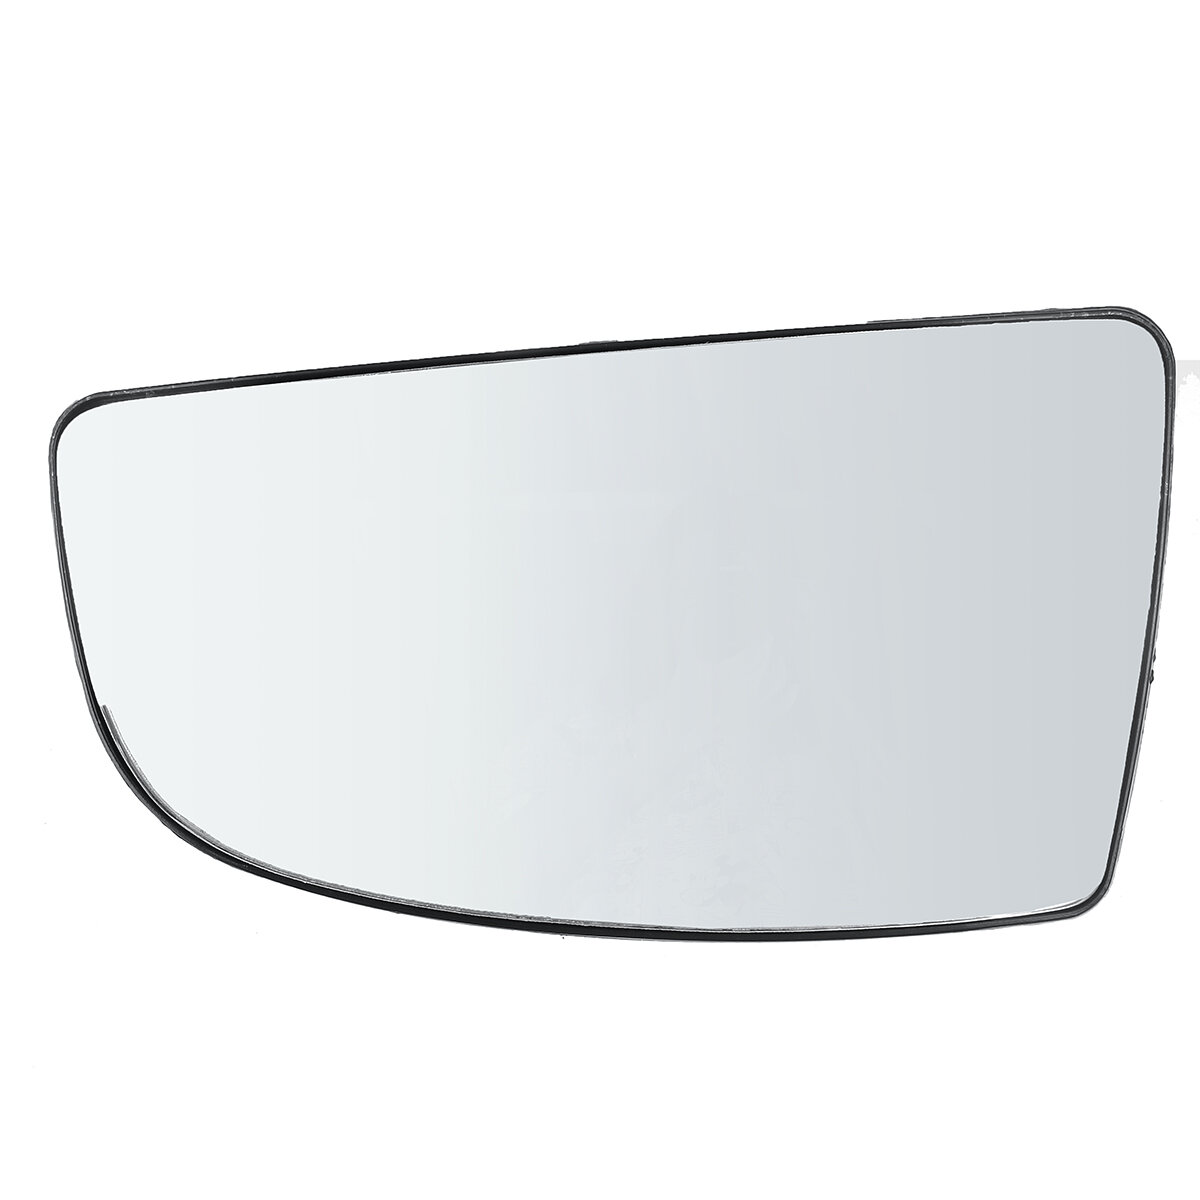 Achteruitkijkspiegel links Onderste deur spiegelglas + achterplaat voor Ford Transit MK8 vanaf 2014